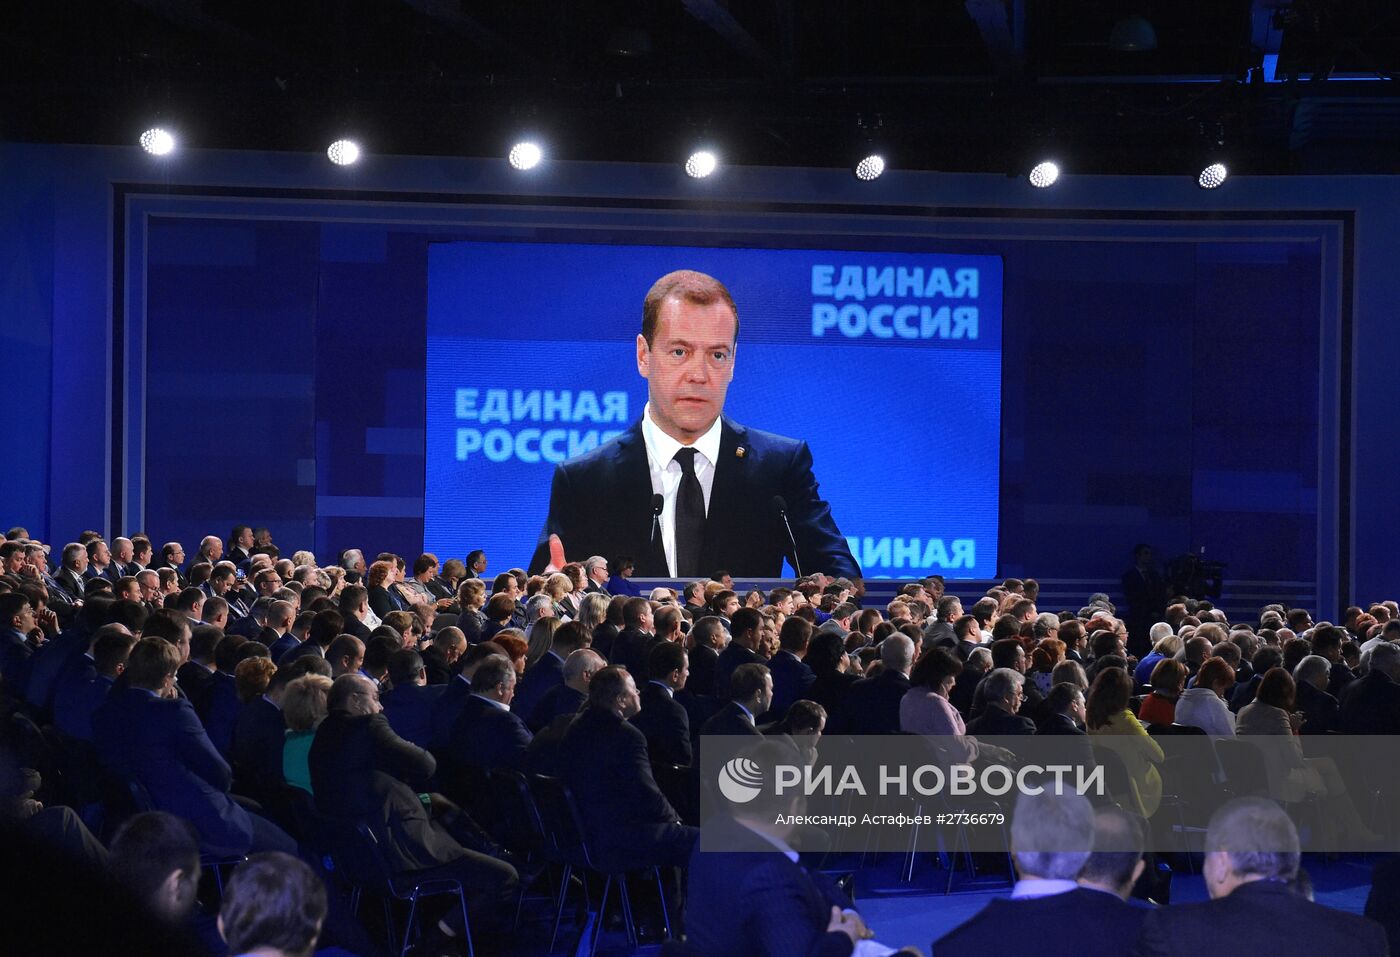 Премьер-министр РФ Д.Медведев выступил на Всероссийском форуме местных отделений партии "Единая Россия"